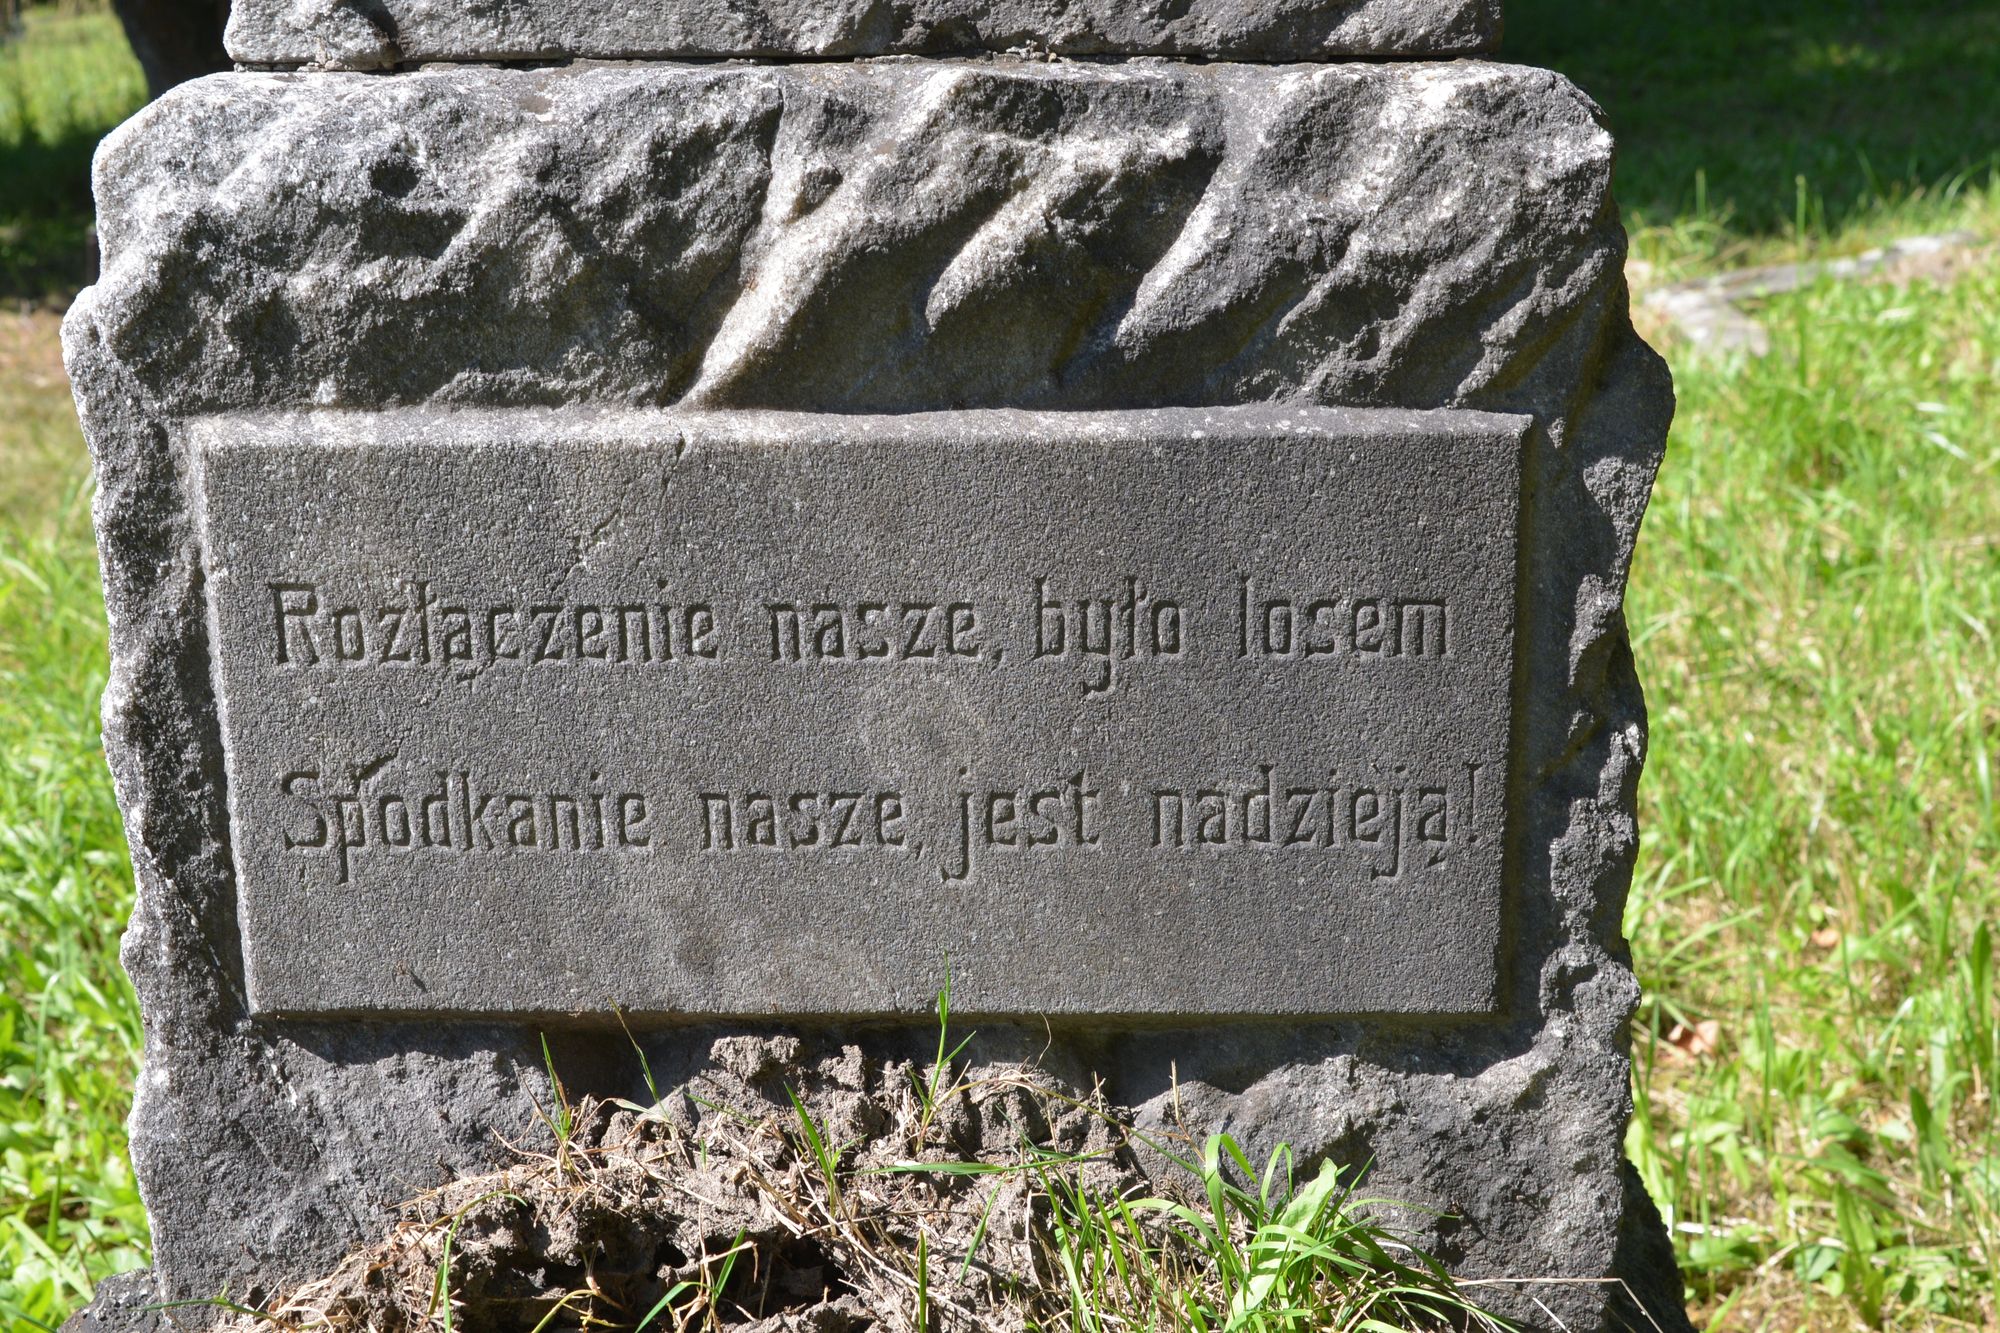 Tombstone of Zofia Svoboda, Karviná Doly Cemetery